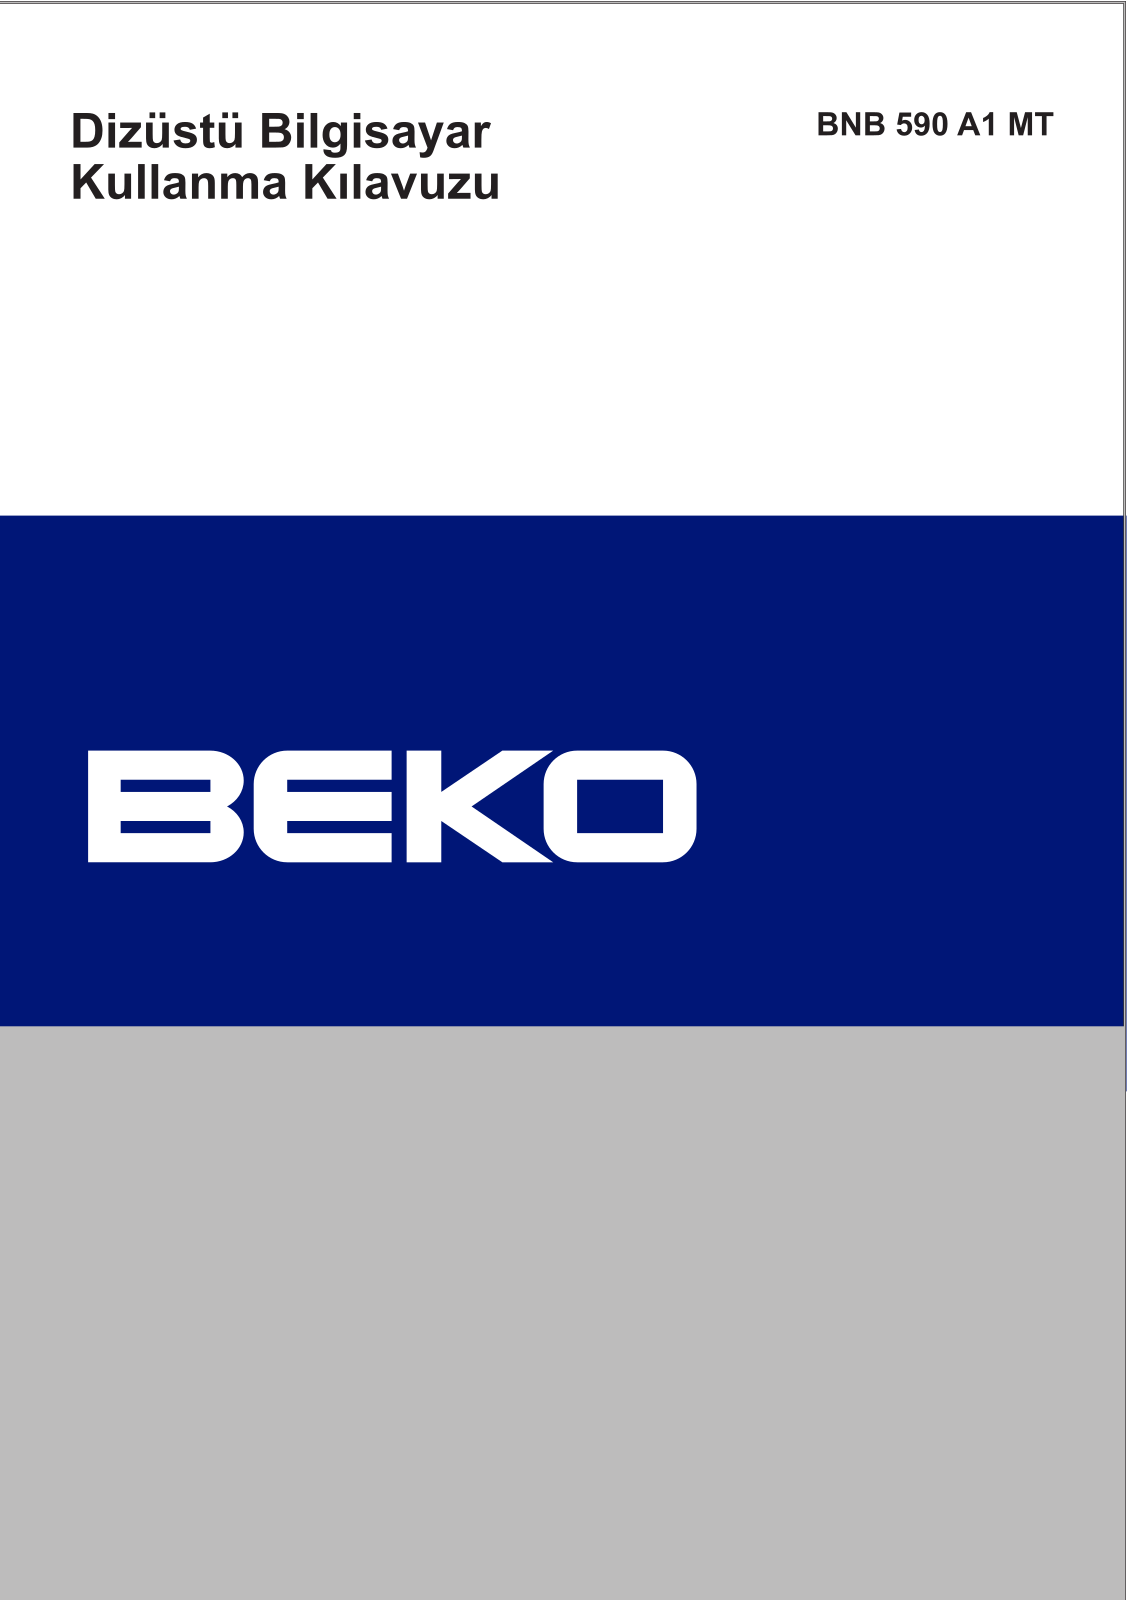 Beko BNB 590 A1 MT Manual